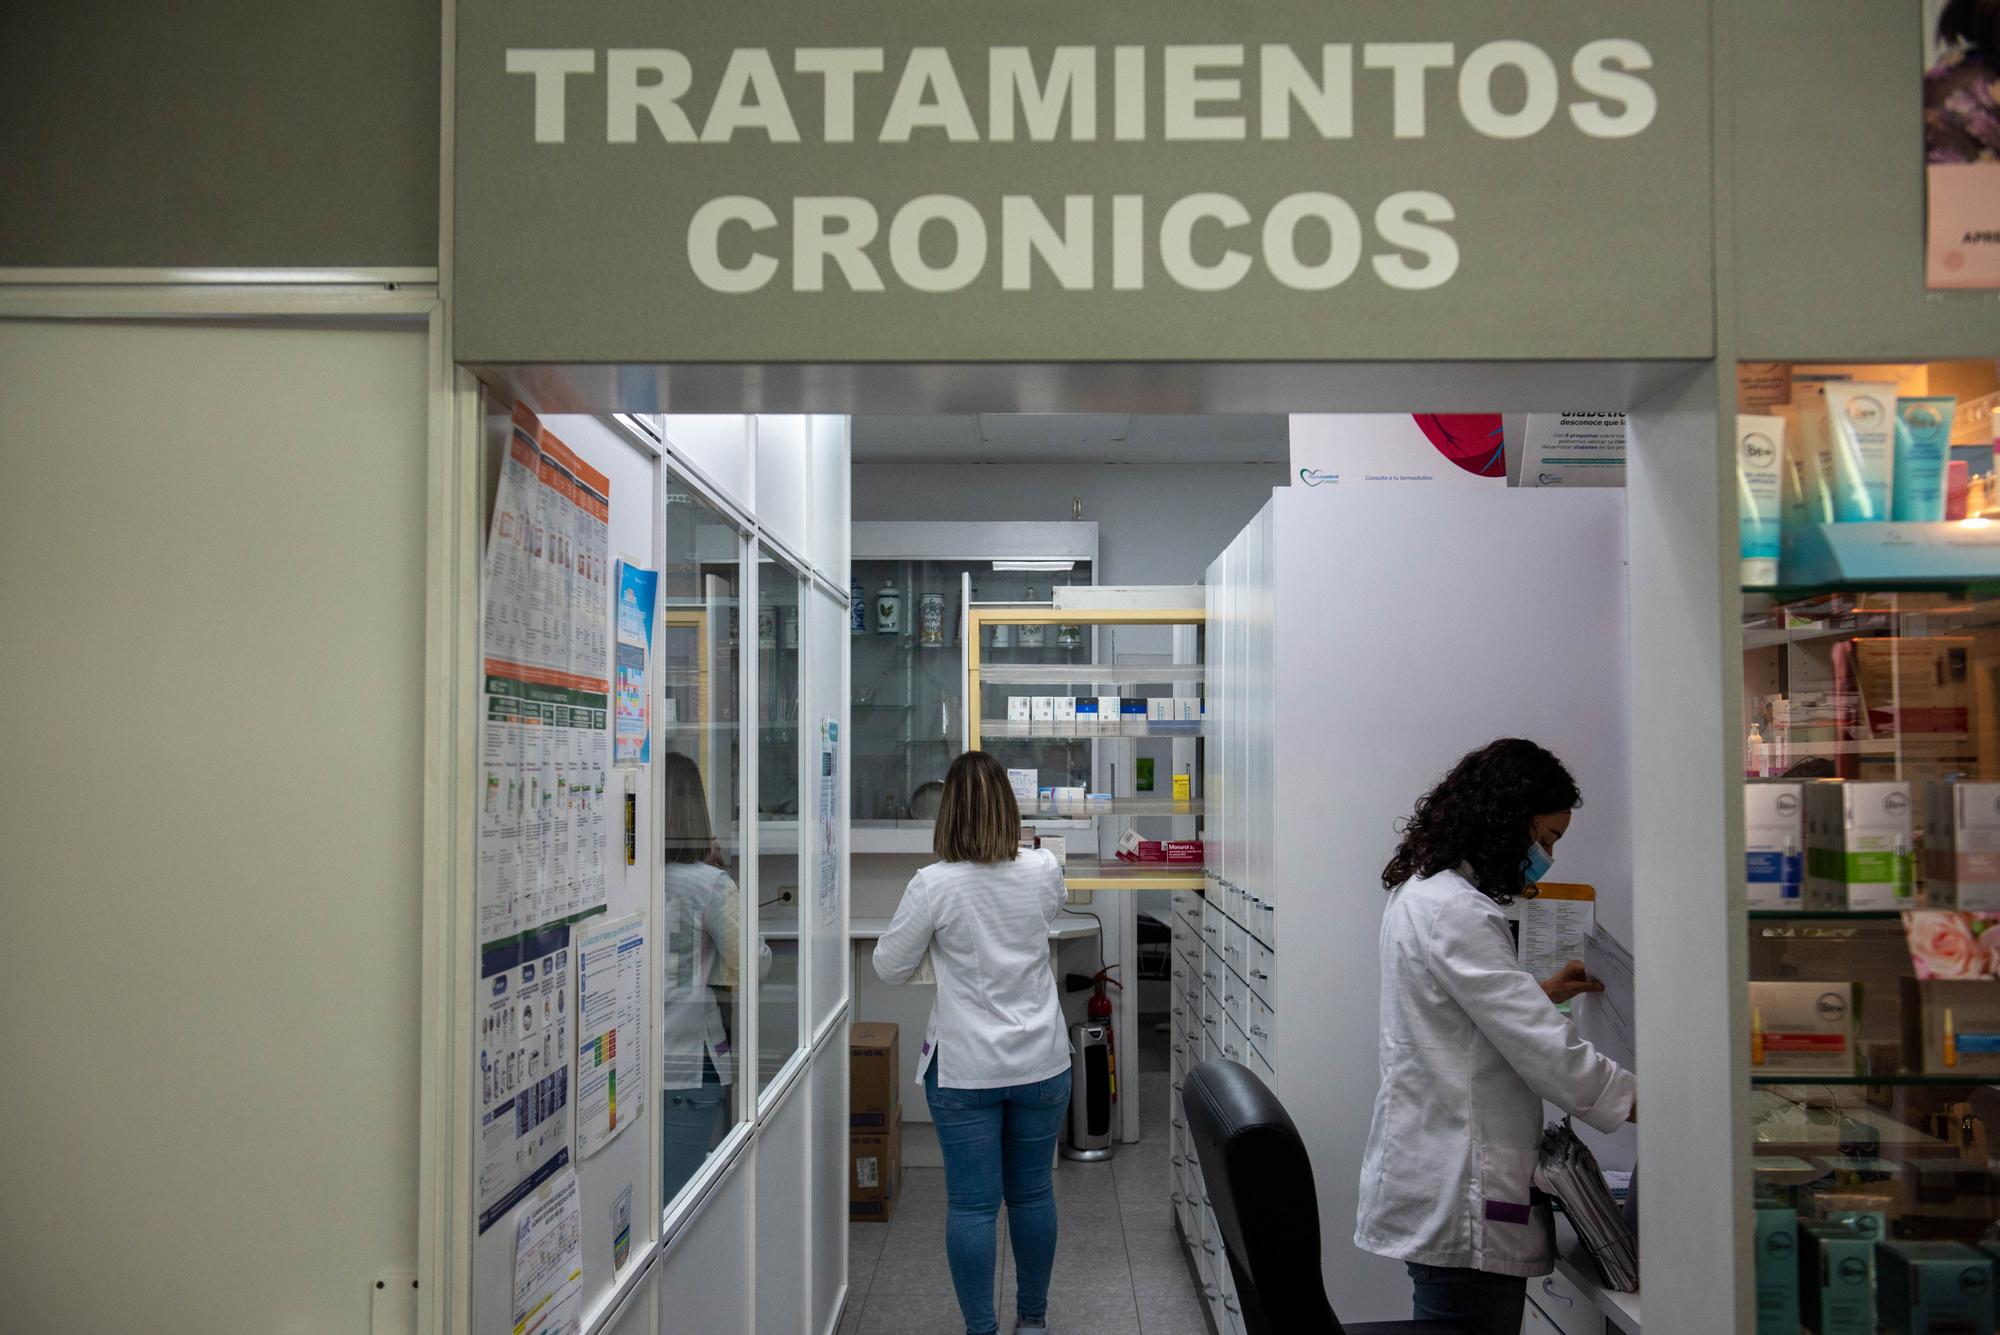 Dosis a la carta en A Coruña para medicarse mejor